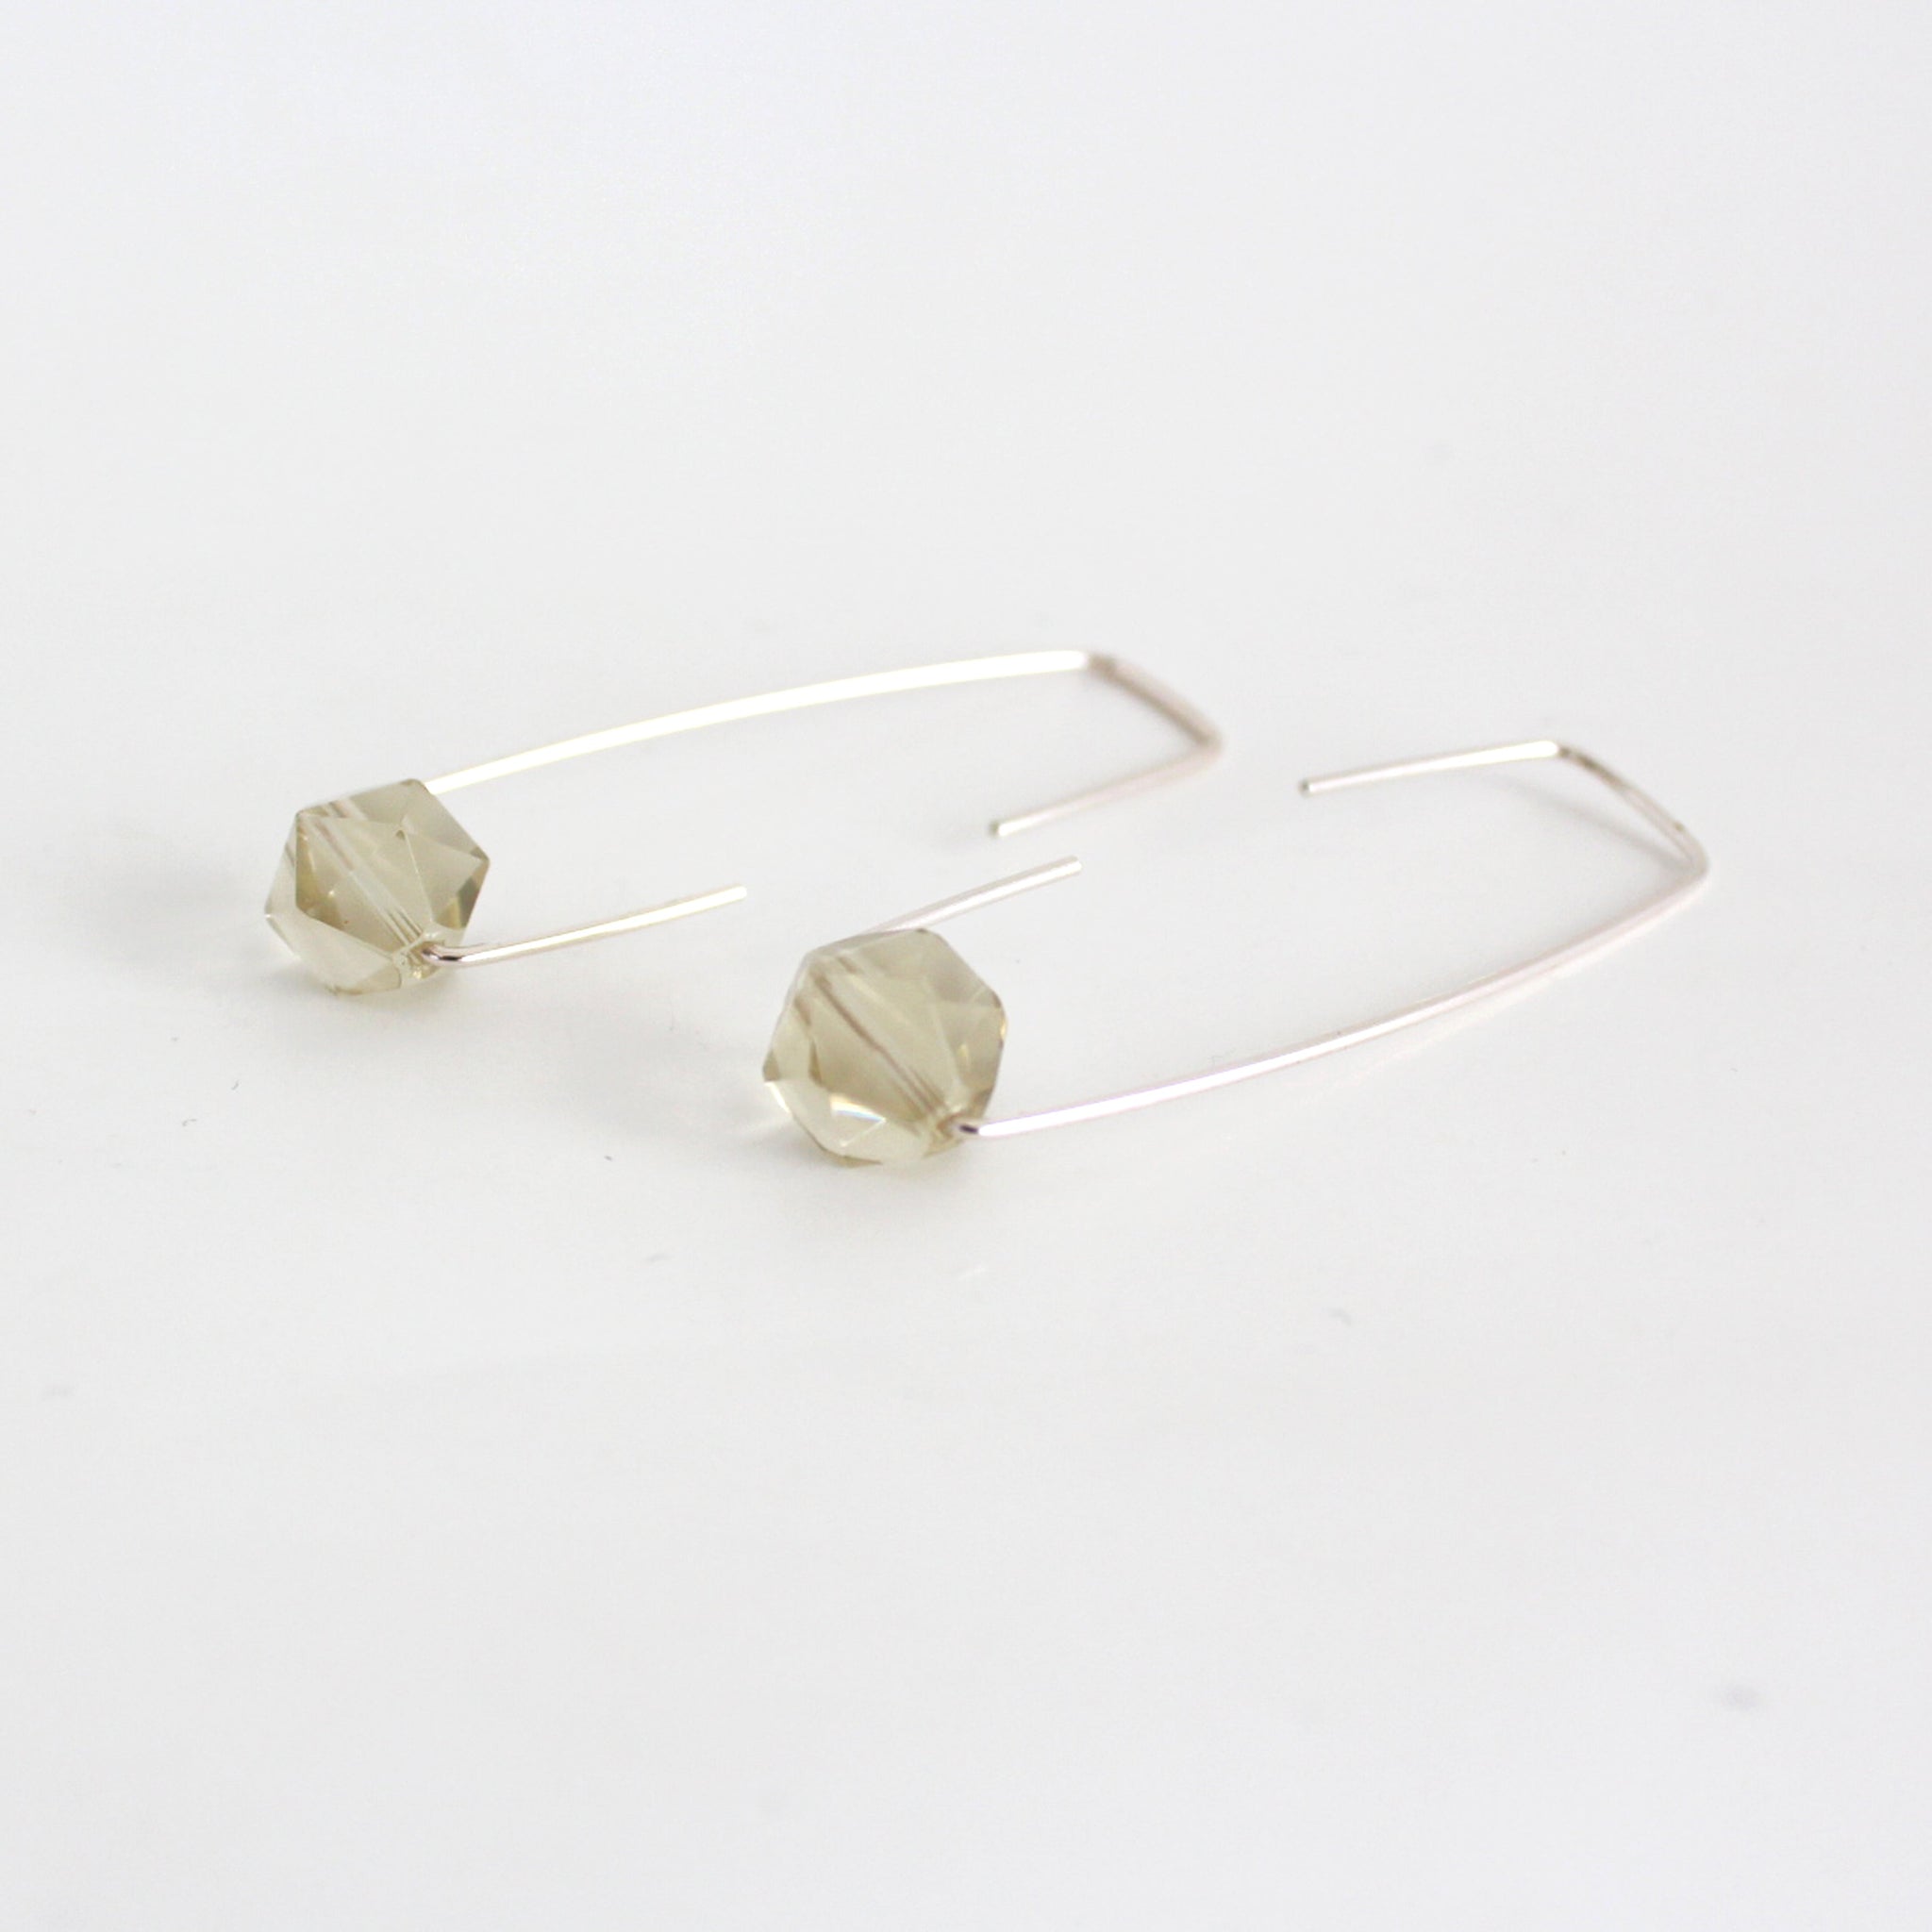 Lemon quartz Staple earrings